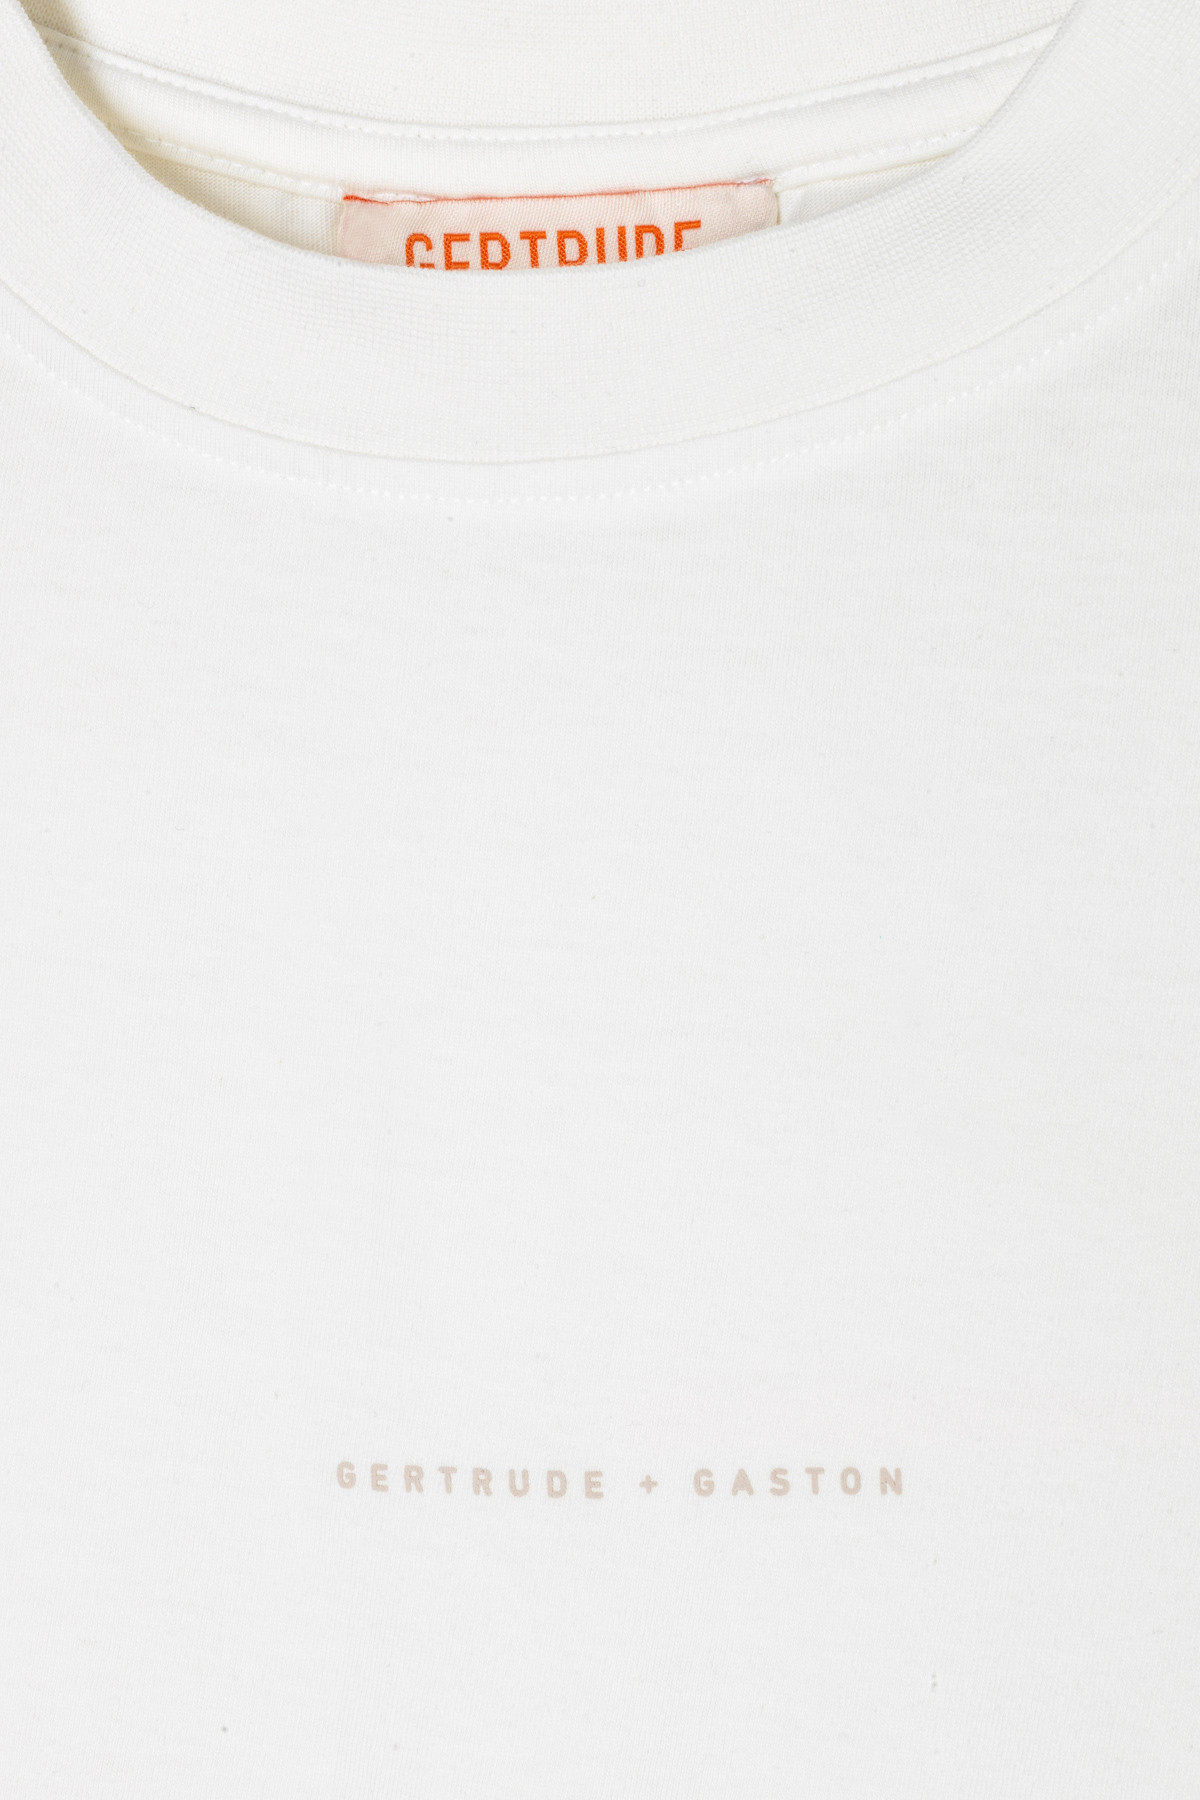 T-shirt homme blanc BAPTISTE GertrudeGaston